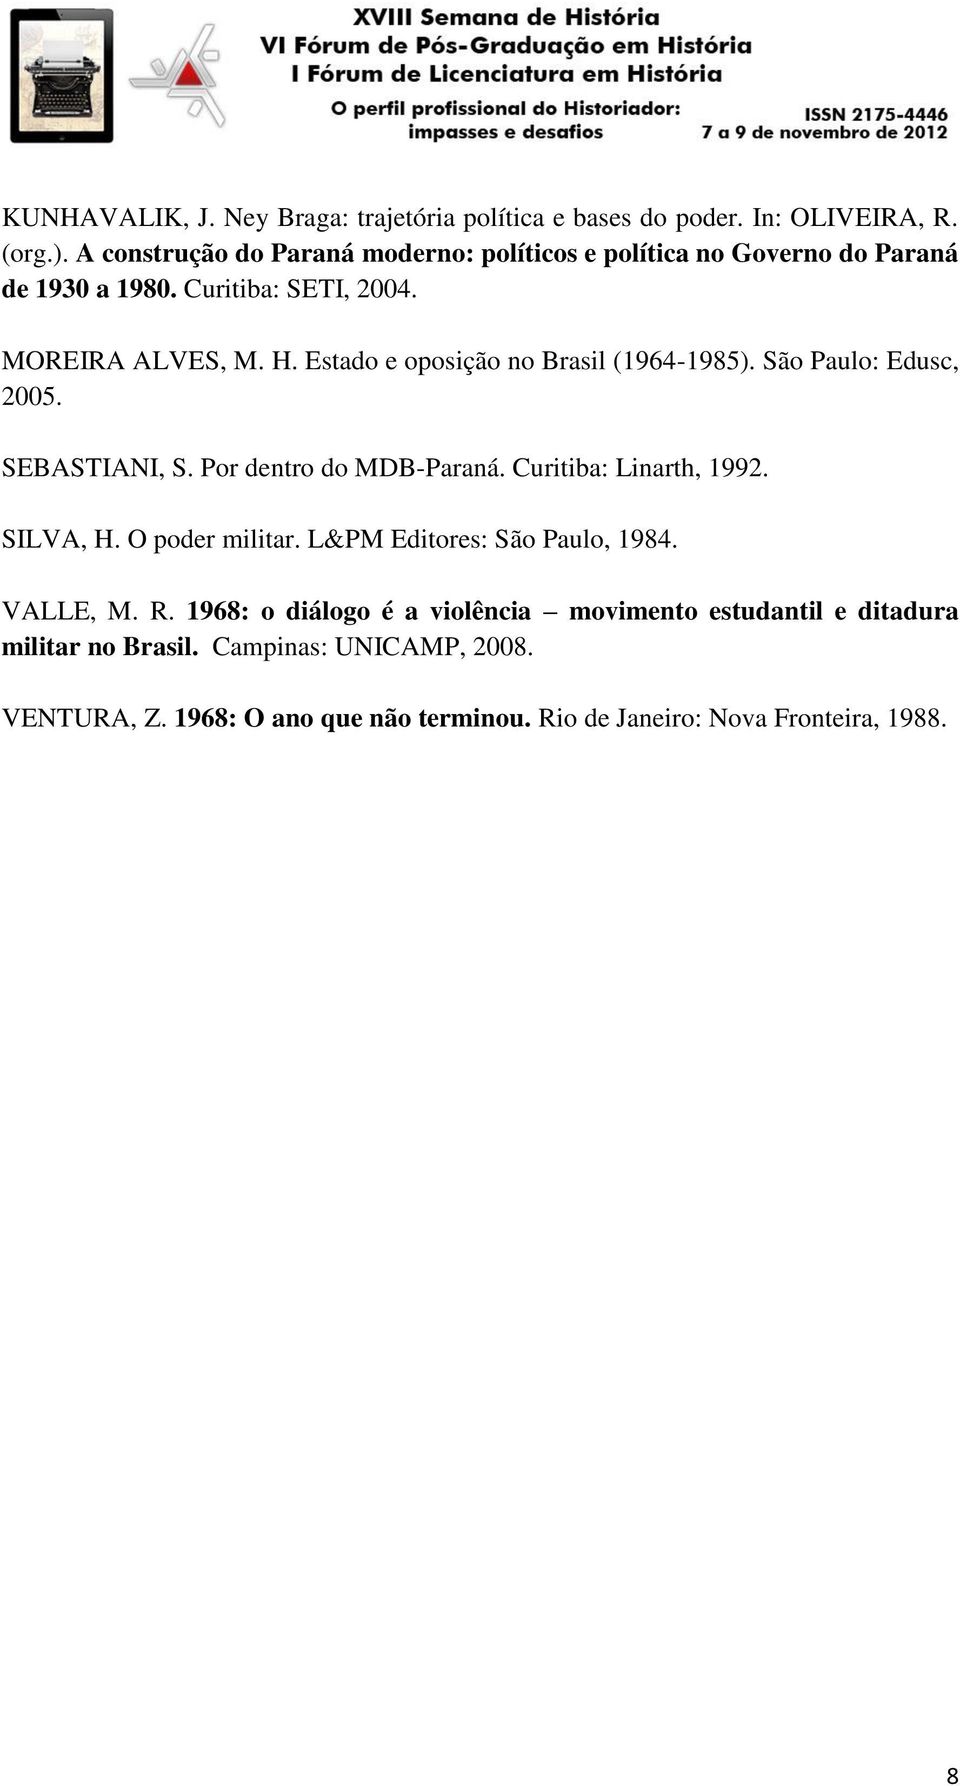 Estado e oposição no Brasil (1964-1985). São Paulo: Edusc, 2005. SEBASTIANI, S. Por dentro do MDB-Paraná. Curitiba: Linarth, 1992. SILVA, H.